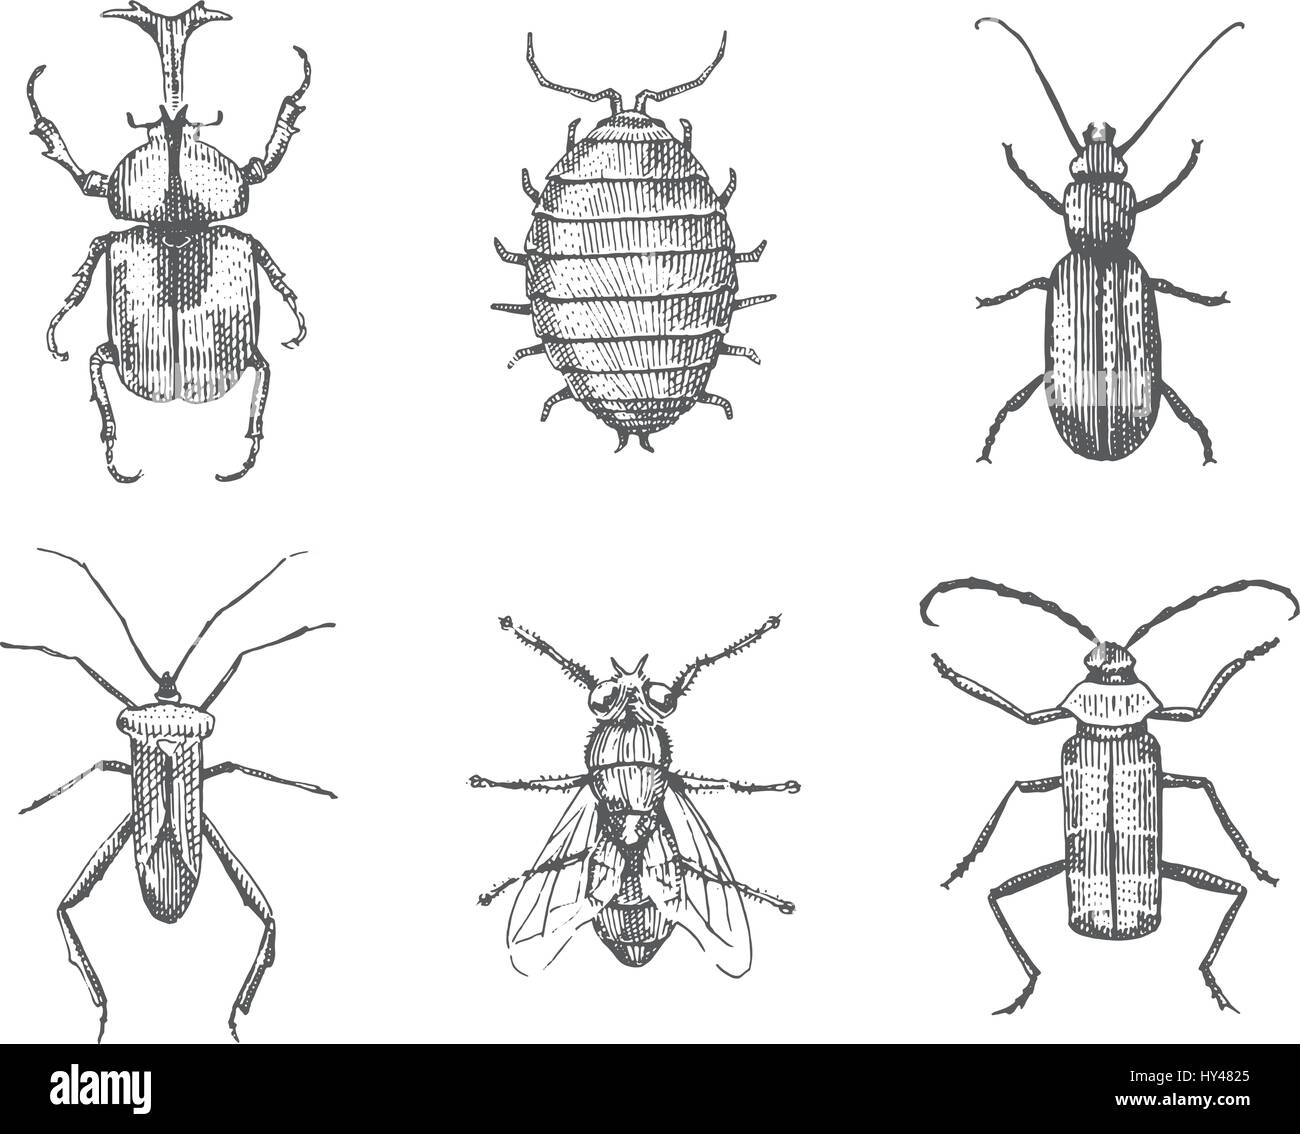 Grand ensemble de bugs insectes coléoptères et les abeilles, les puces de nombreuses espèces dans l'ancien style vintage dessinés à la main, gravées sur bois illustration animaux Illustration de Vecteur